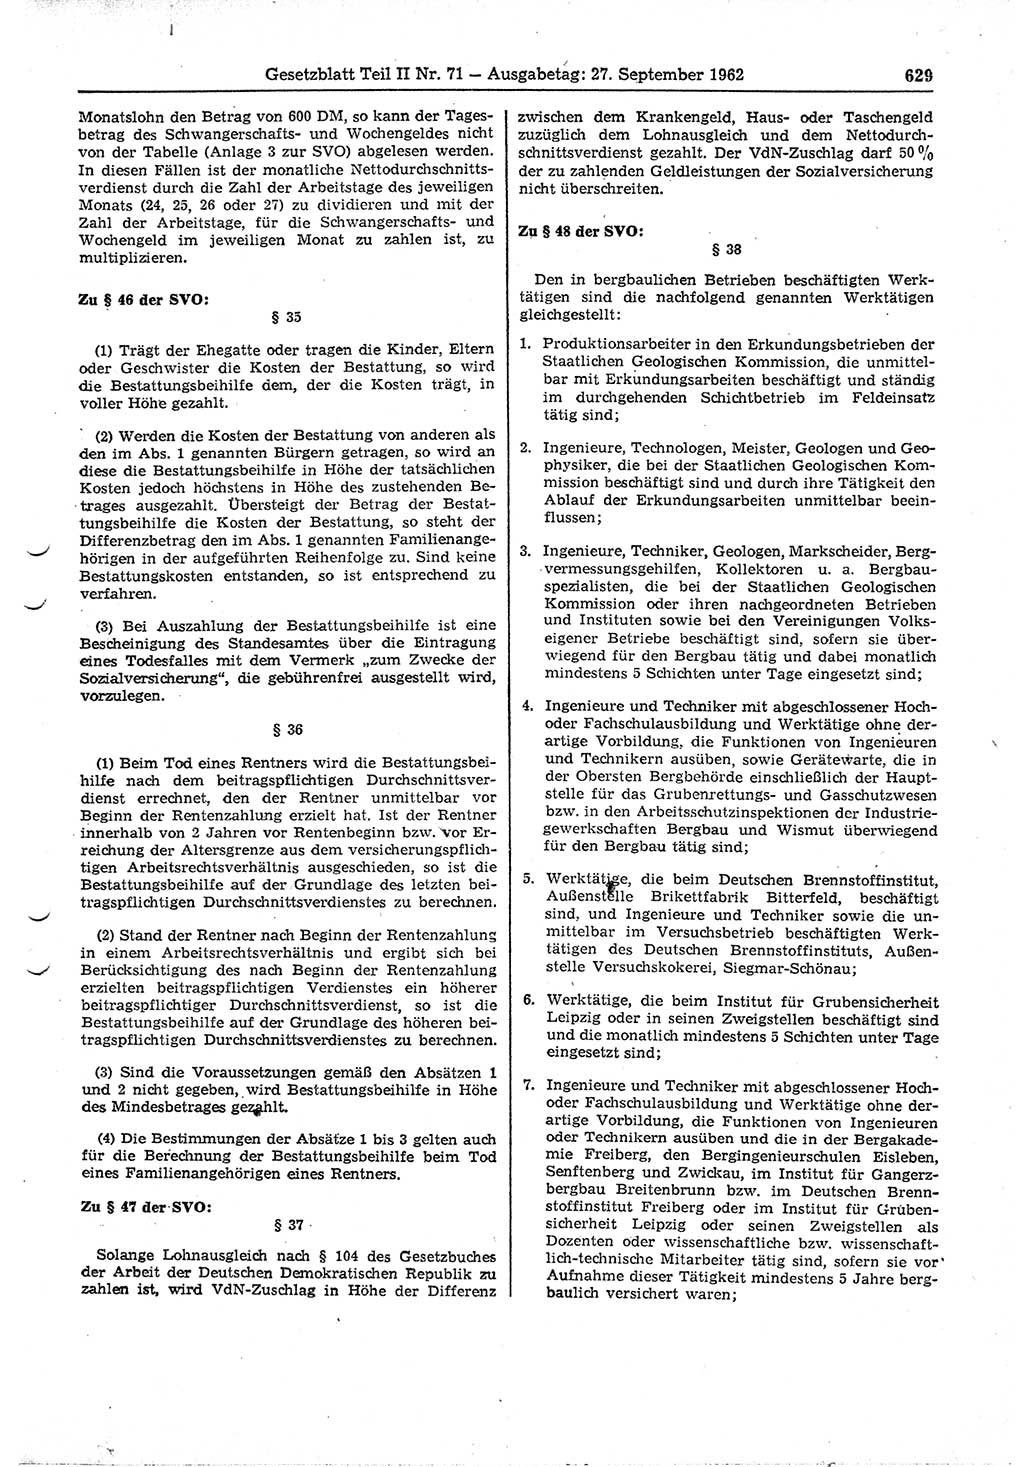 Gesetzblatt (GBl.) der Deutschen Demokratischen Republik (DDR) Teil ⅠⅠ 1962, Seite 629 (GBl. DDR ⅠⅠ 1962, S. 629)